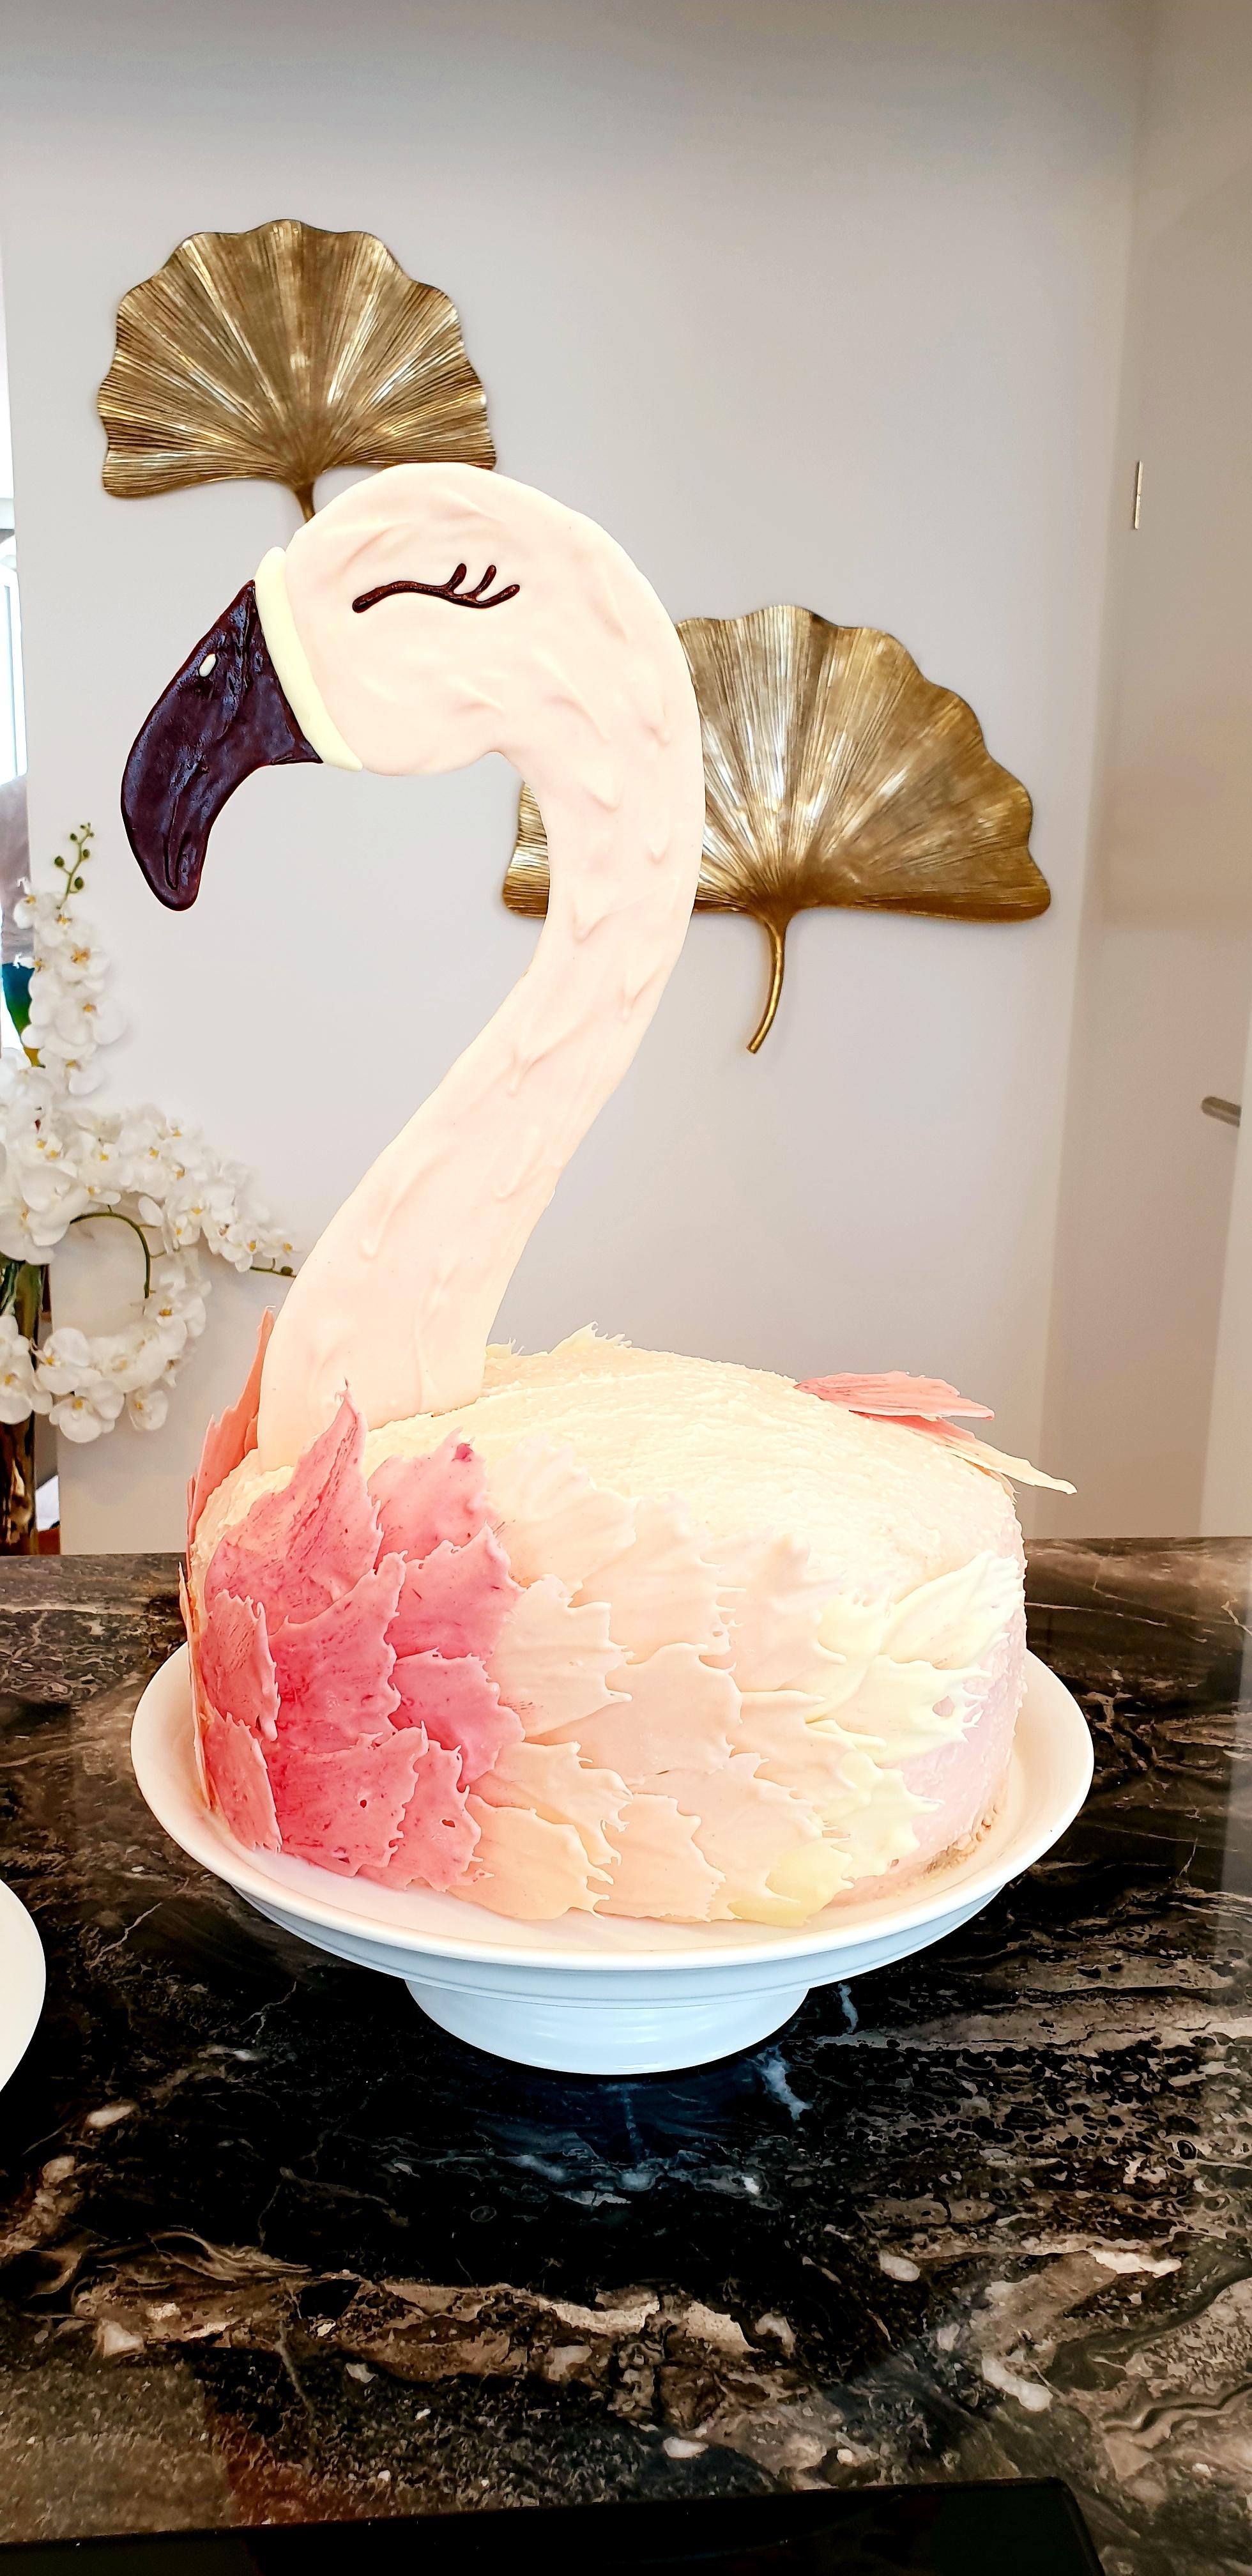 Wenn schon keine B-Day-Party mit Freunden, dann wenigstens eine Torte!
#Flamingo #selfmade #allesfürdiekleinen.. #5